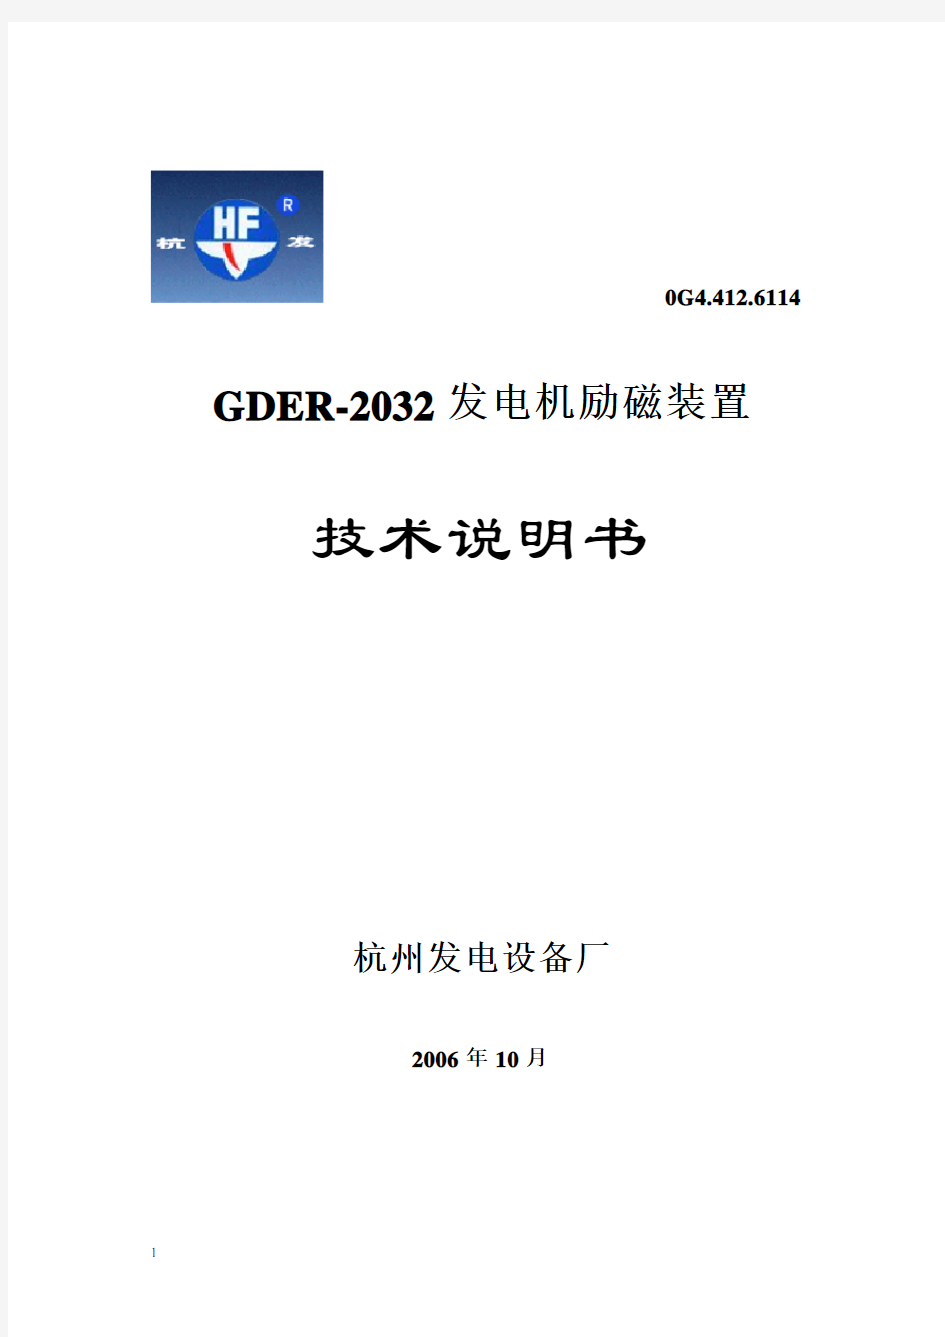 GDER-2032技术说明书(出版)